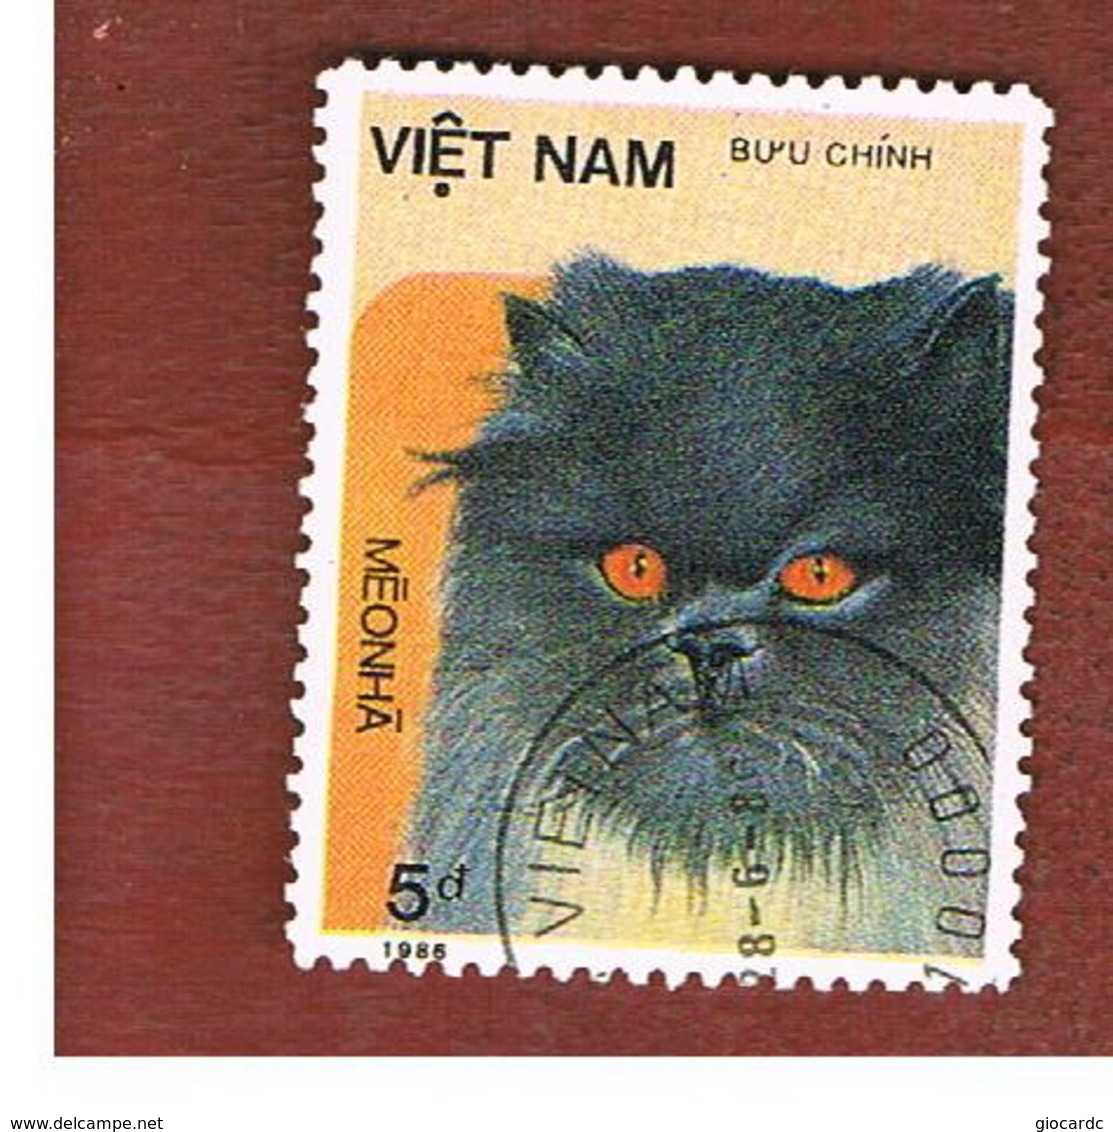 VIETNAM - SG 952    -   1986   CATS: BLACK-FACED CAT                         -    USED - Vietnam